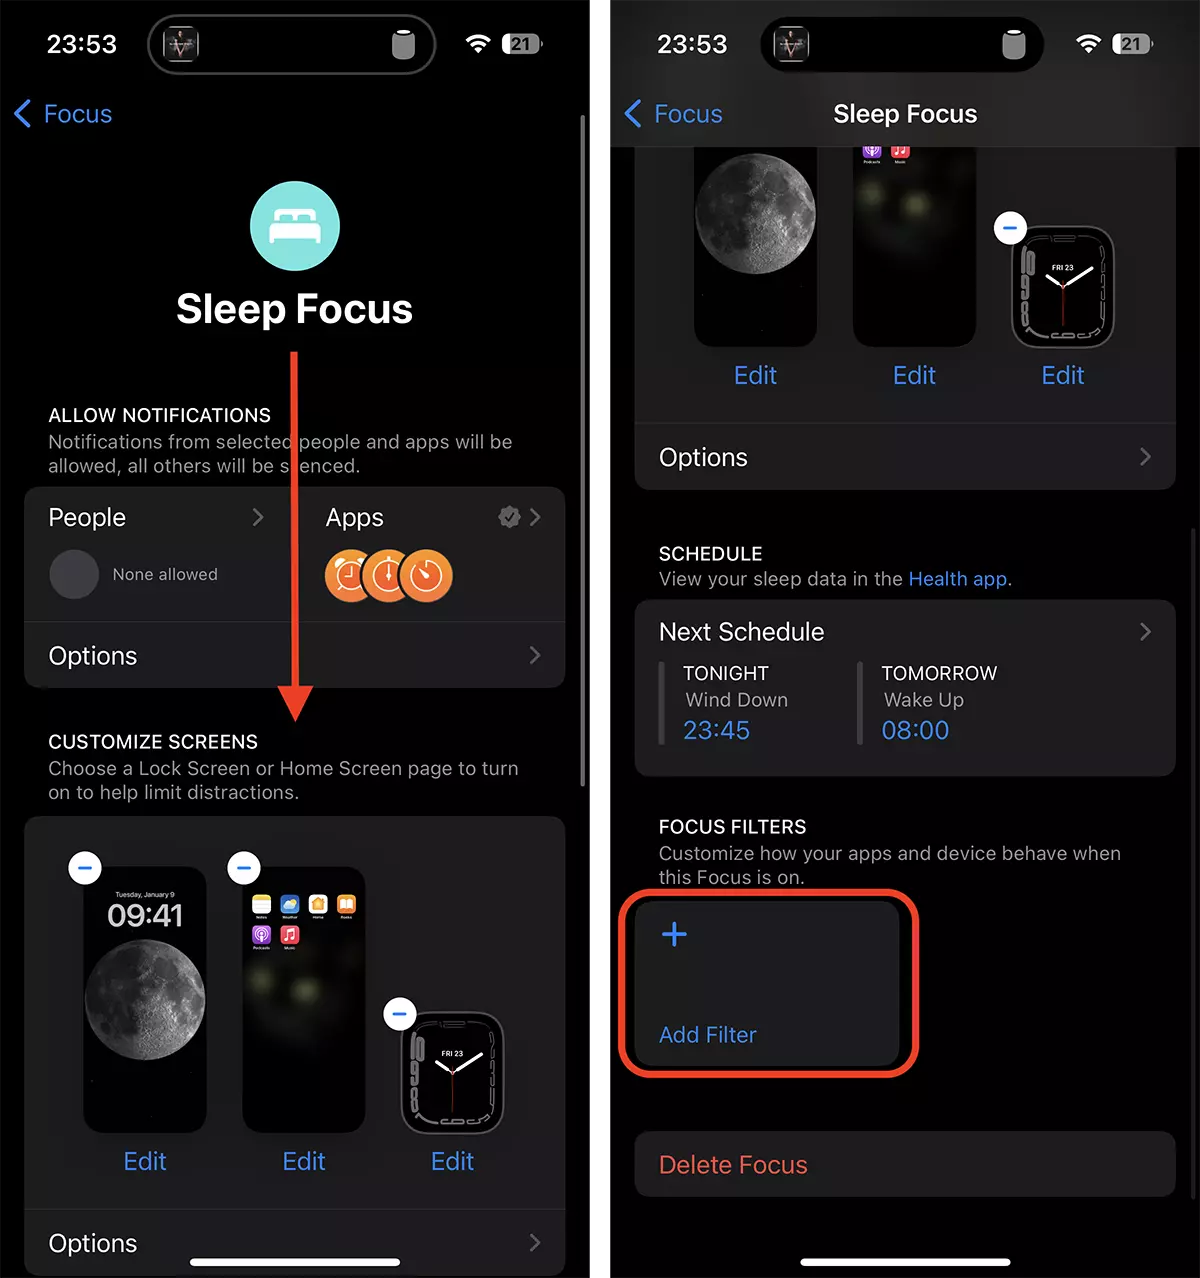 Bagaimanakah anda menetapkan pengaktifan automatik bagi Low Power Mode Cand iPhone ialah Sleep Focus